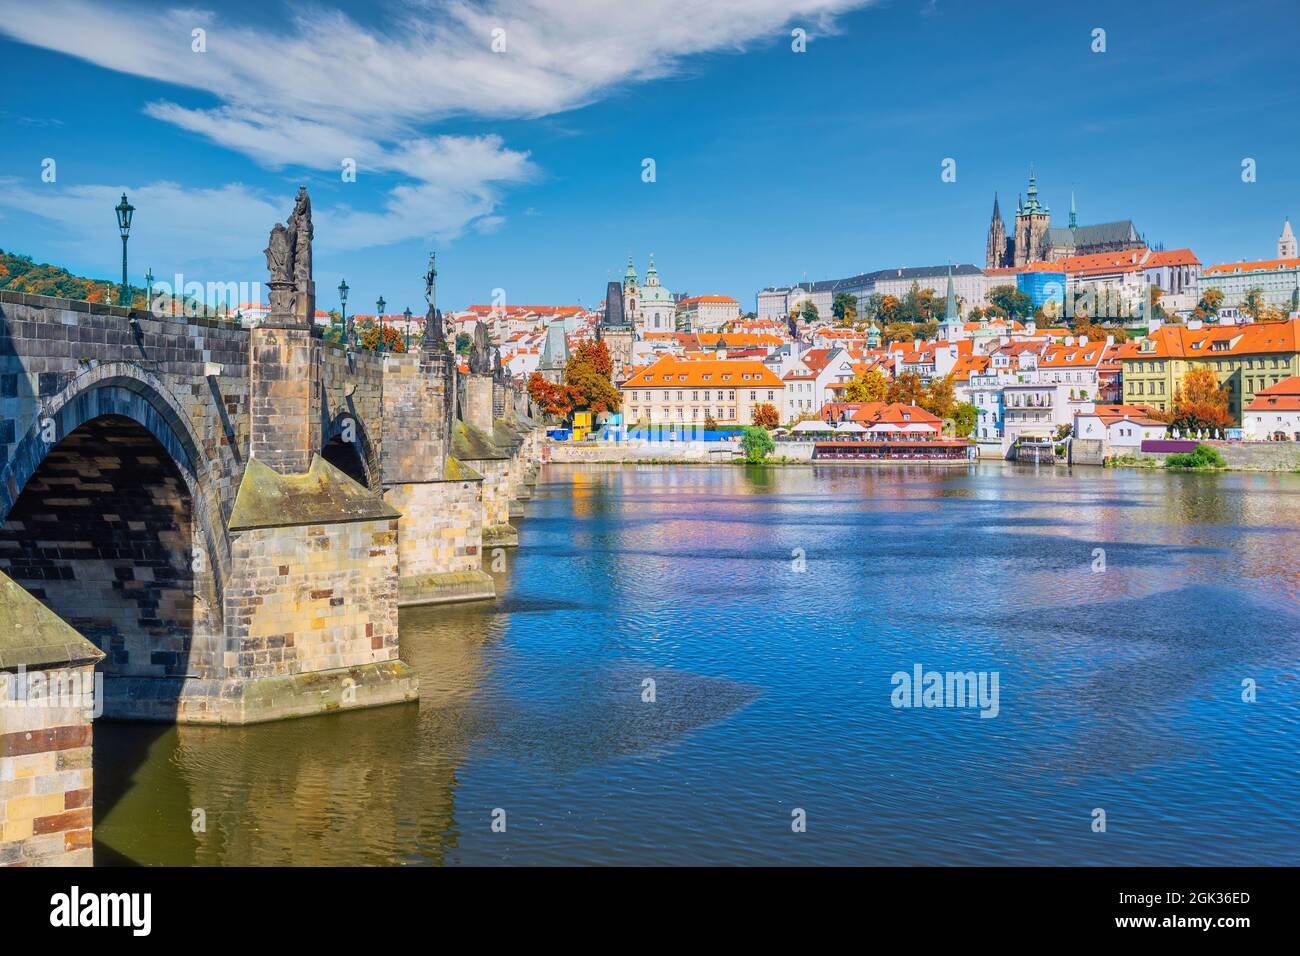 Praga República Checa, el horizonte de la ciudad en el Puente de Carlos y el Castillo de Praga, República Checa con la temporada de follaje de otoño Foto de stock